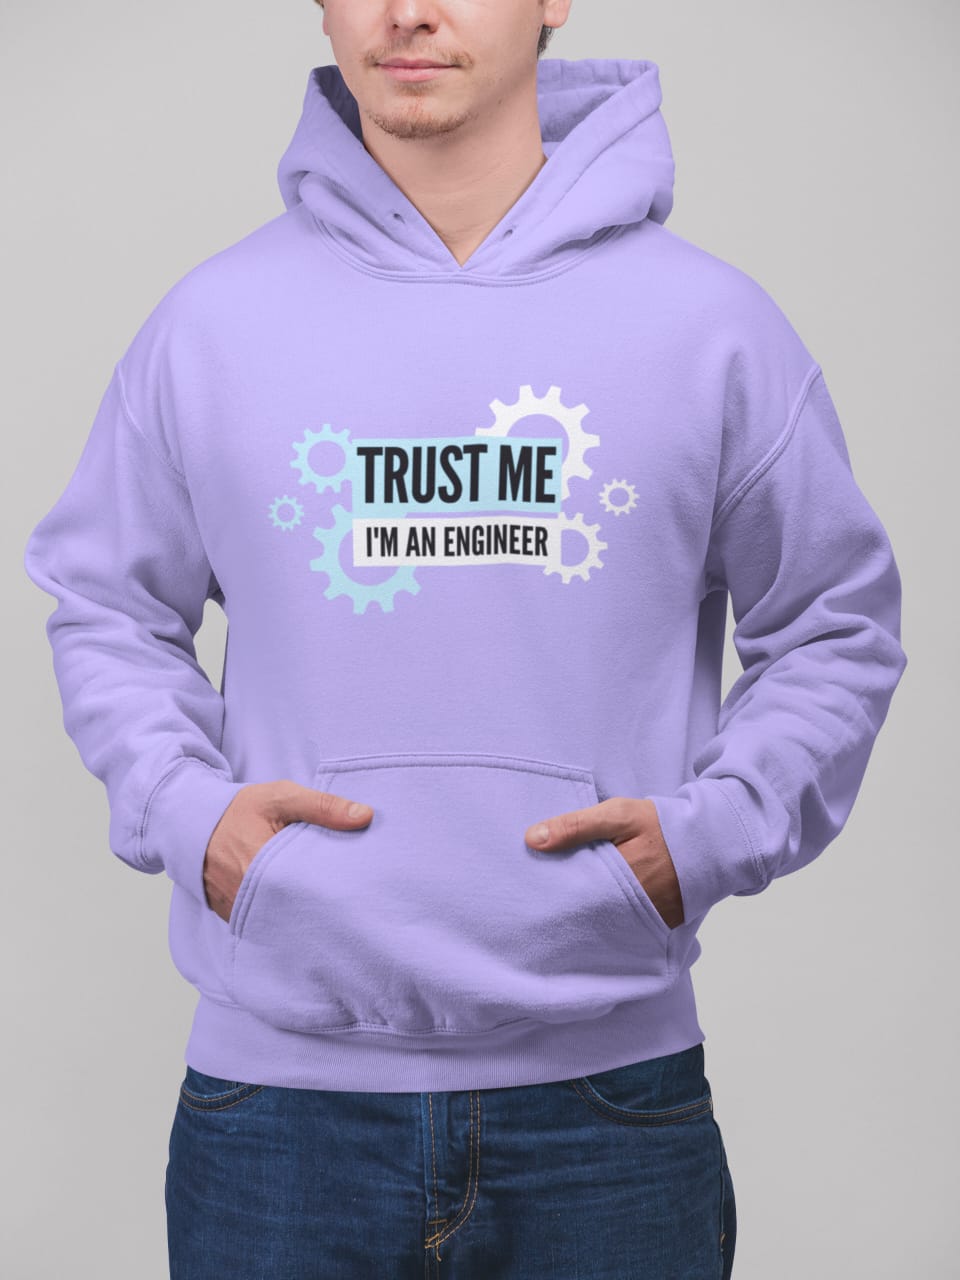 Trust me | Premium Unisex Winter Hoodie